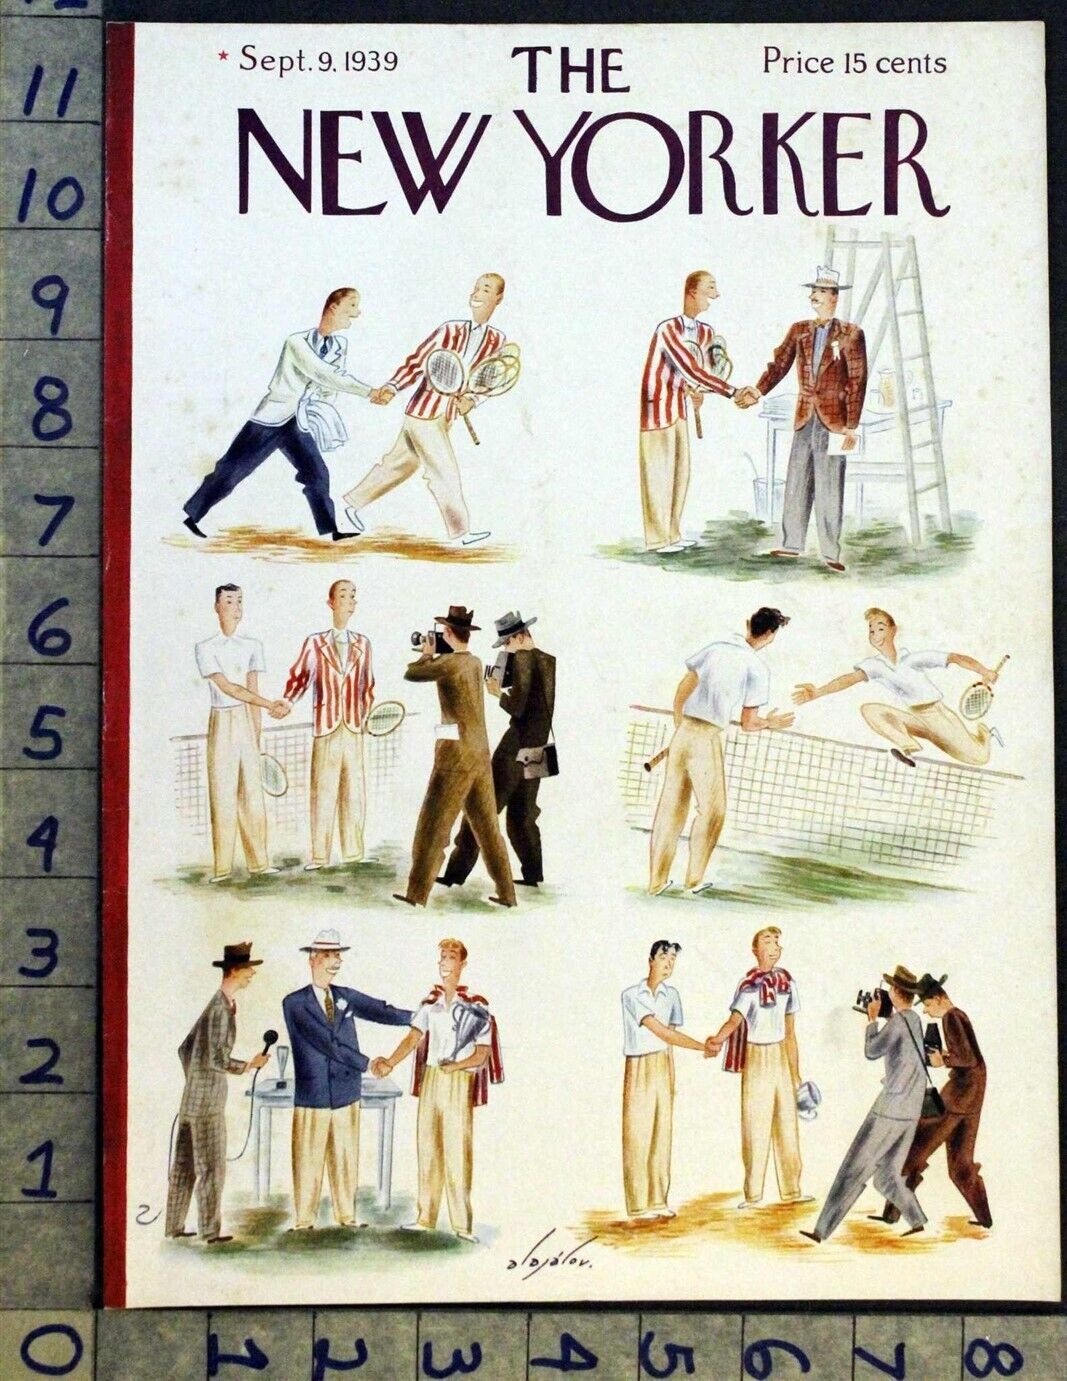 1939 SPORTING MEN TENNIS CHAMPION WINNER ALAJALOV ART NEW YORKER COVER FC1938 